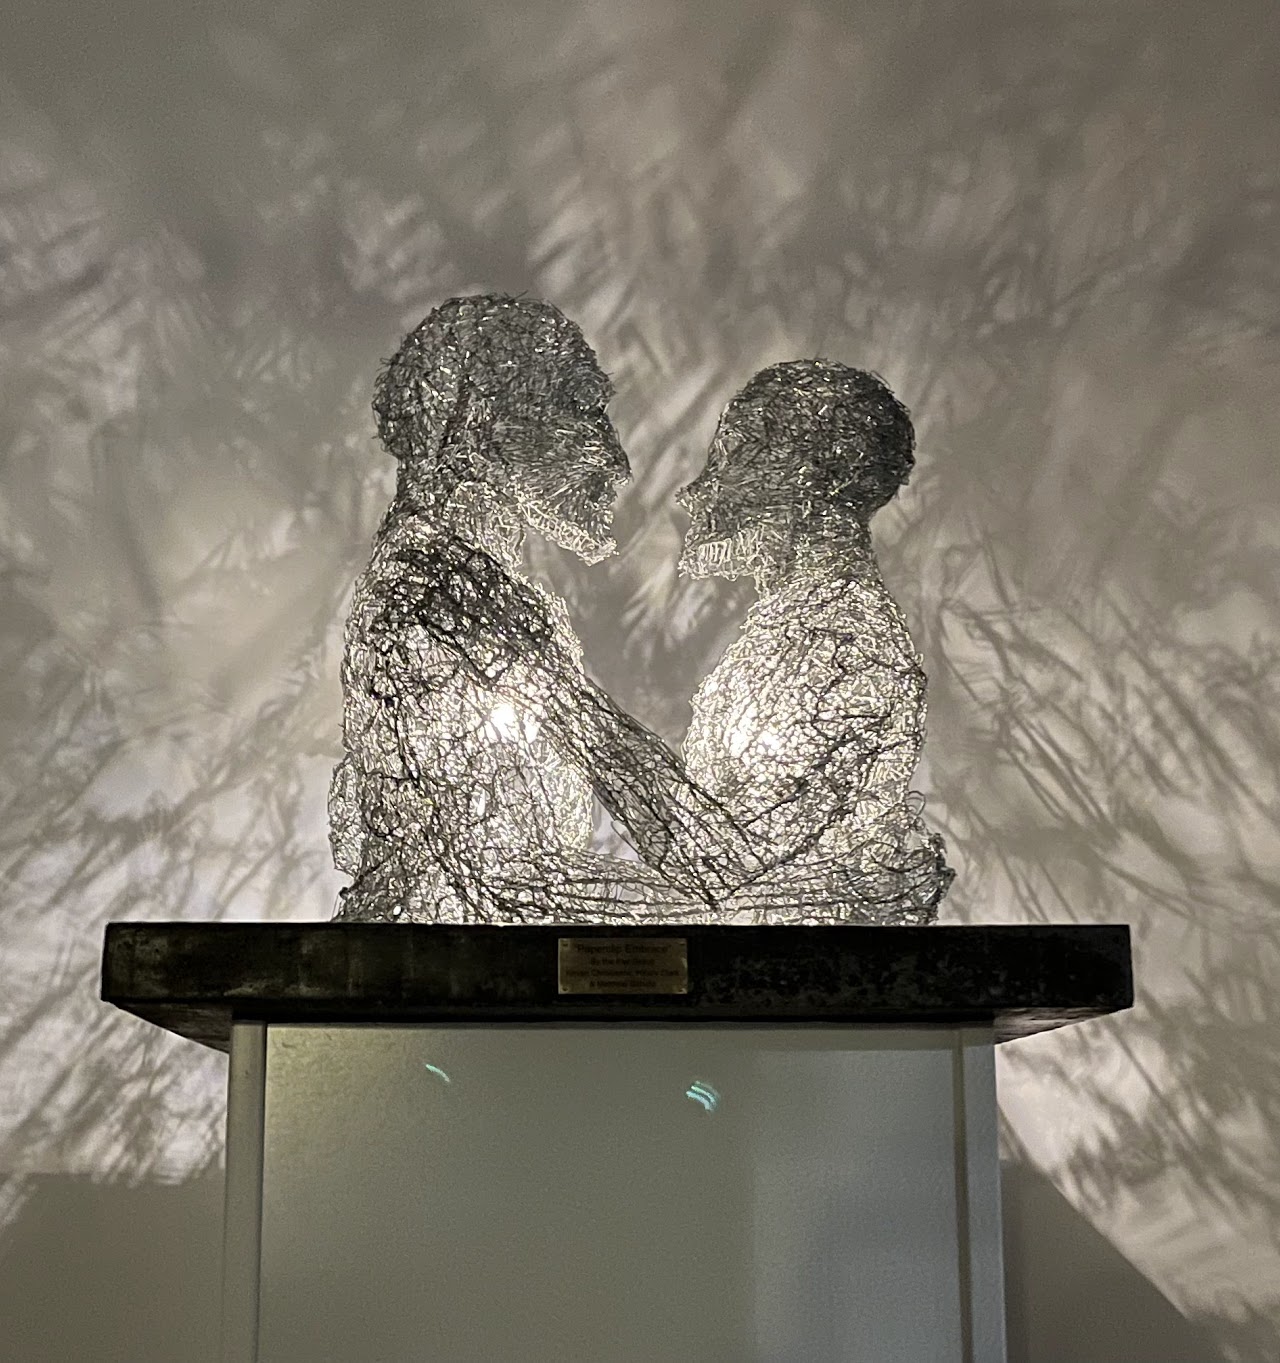 Скульптура "Объятия скрепок", представленная на выставке в Сан-Франциско. Фото © misalignmentmuseum.com 